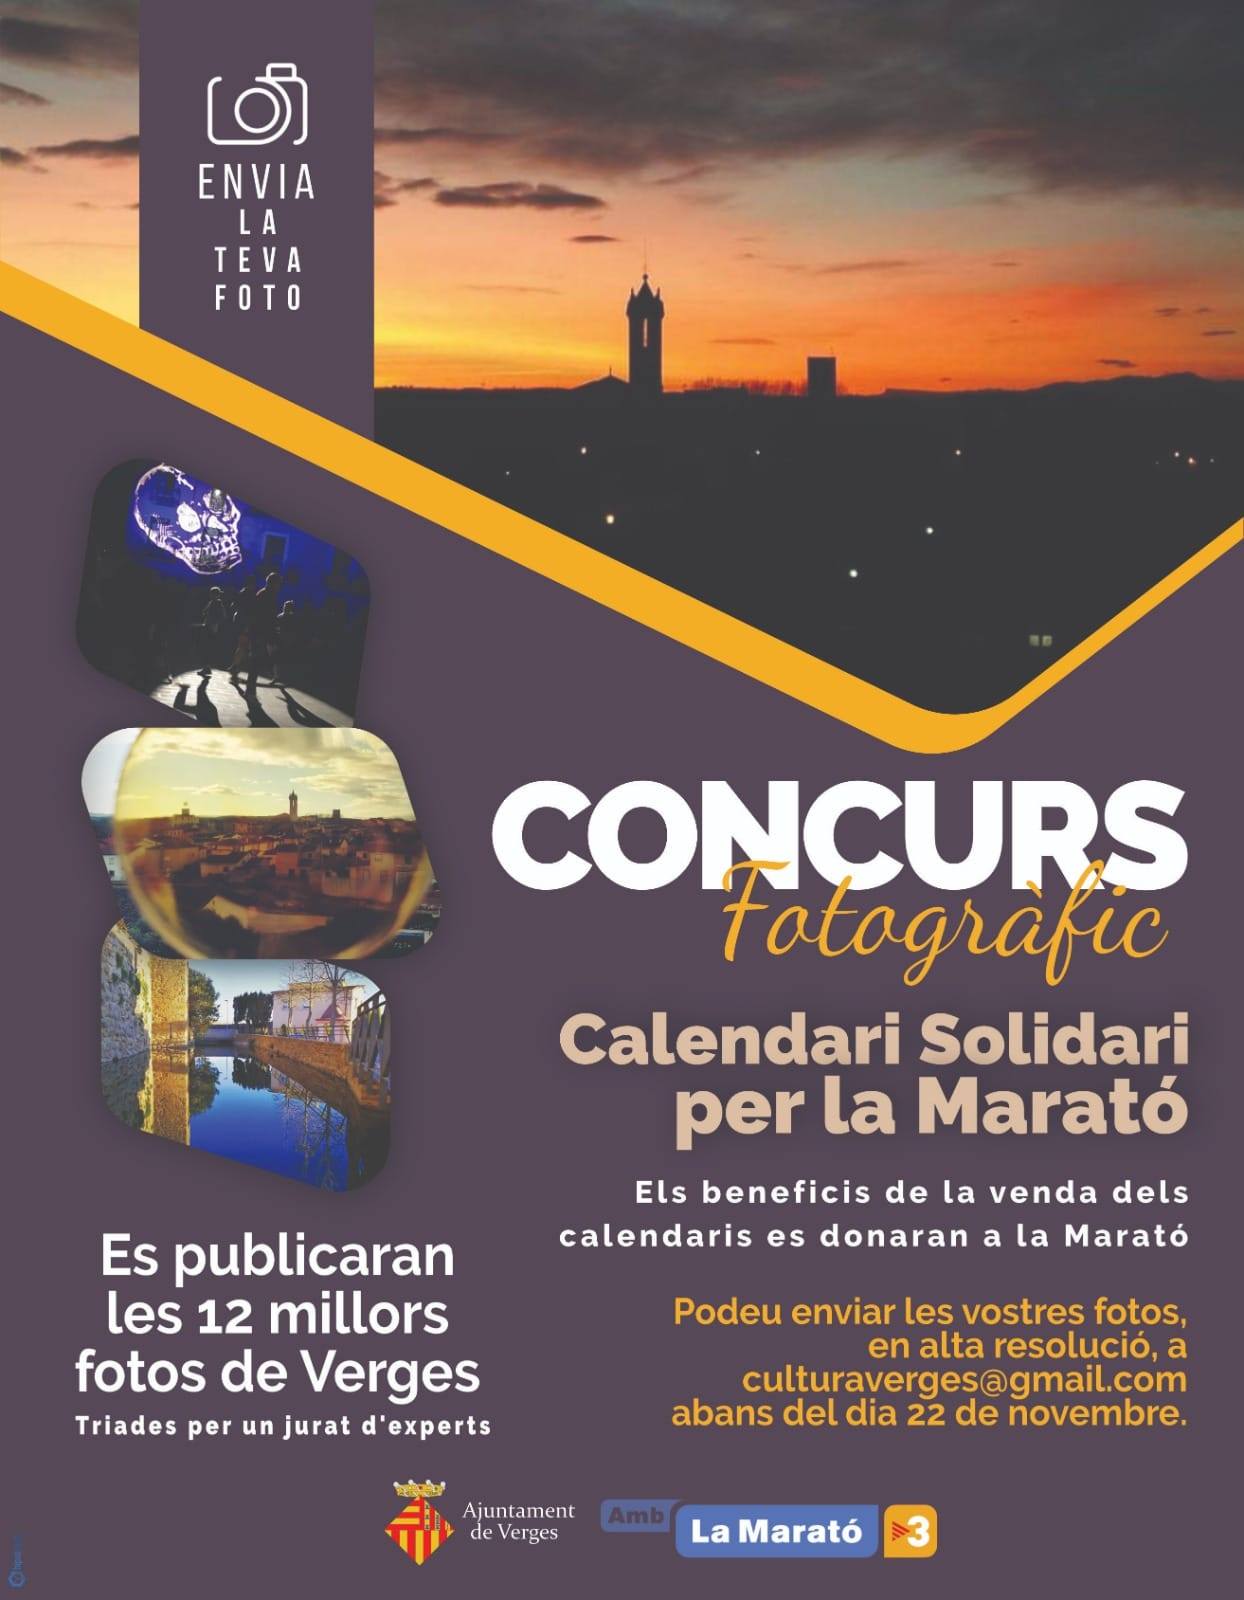 Cartell del concurs fotogràfic pel calendari solidari per la Marató de tv3